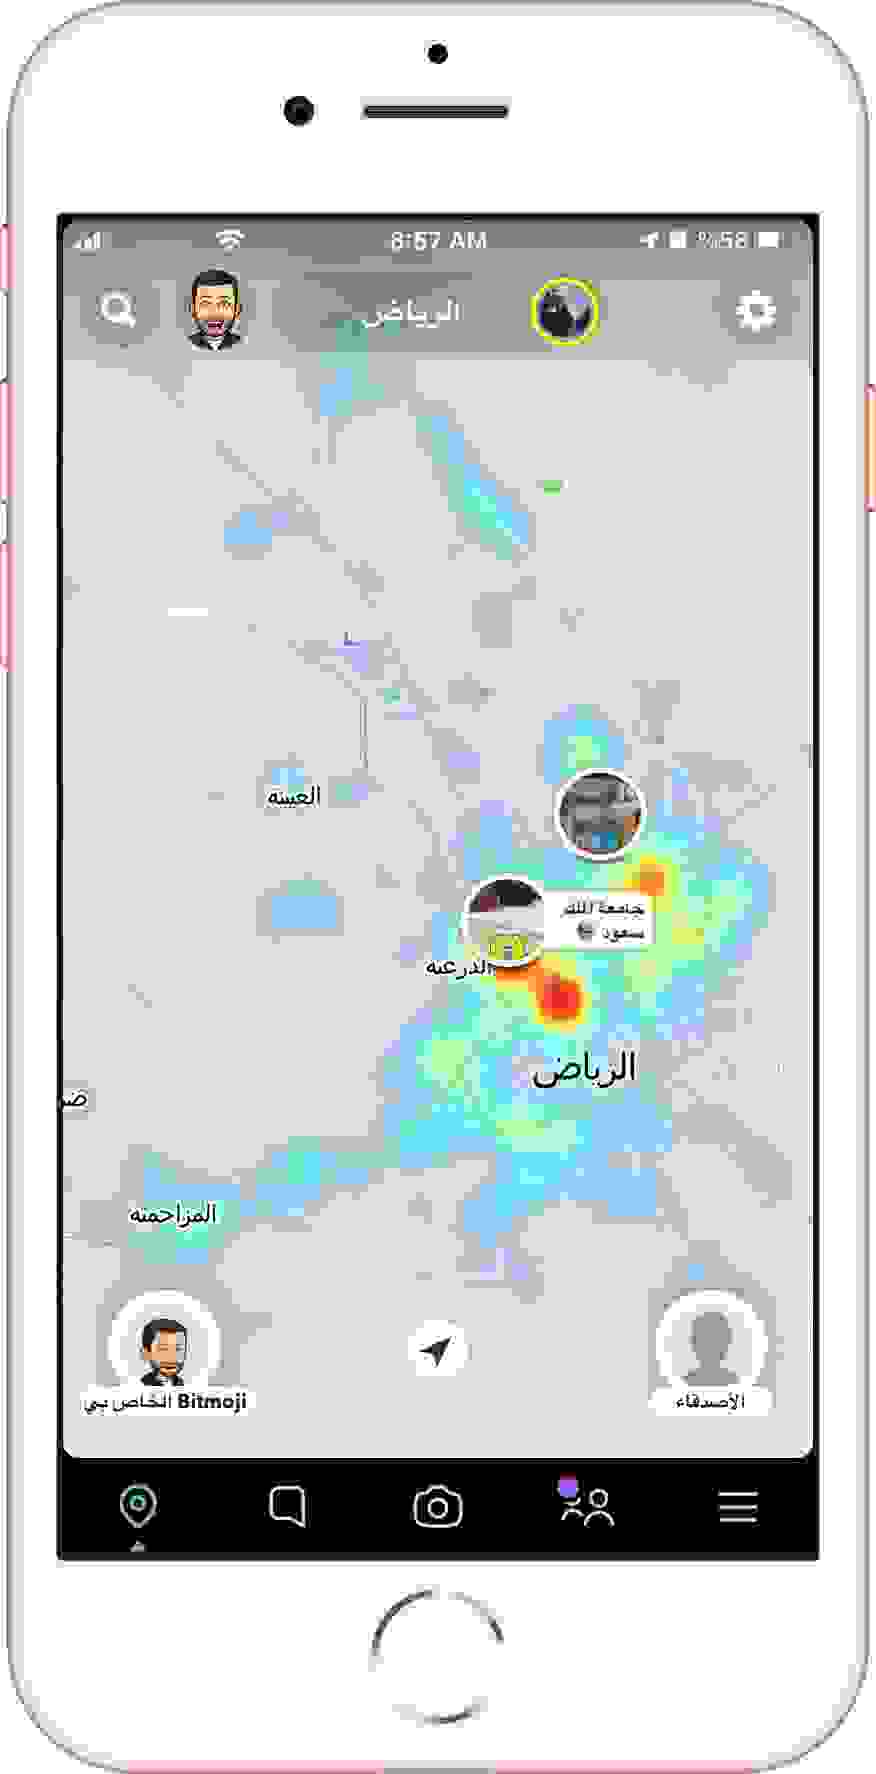 الموقع (خرائط سناب شات Heatmap)